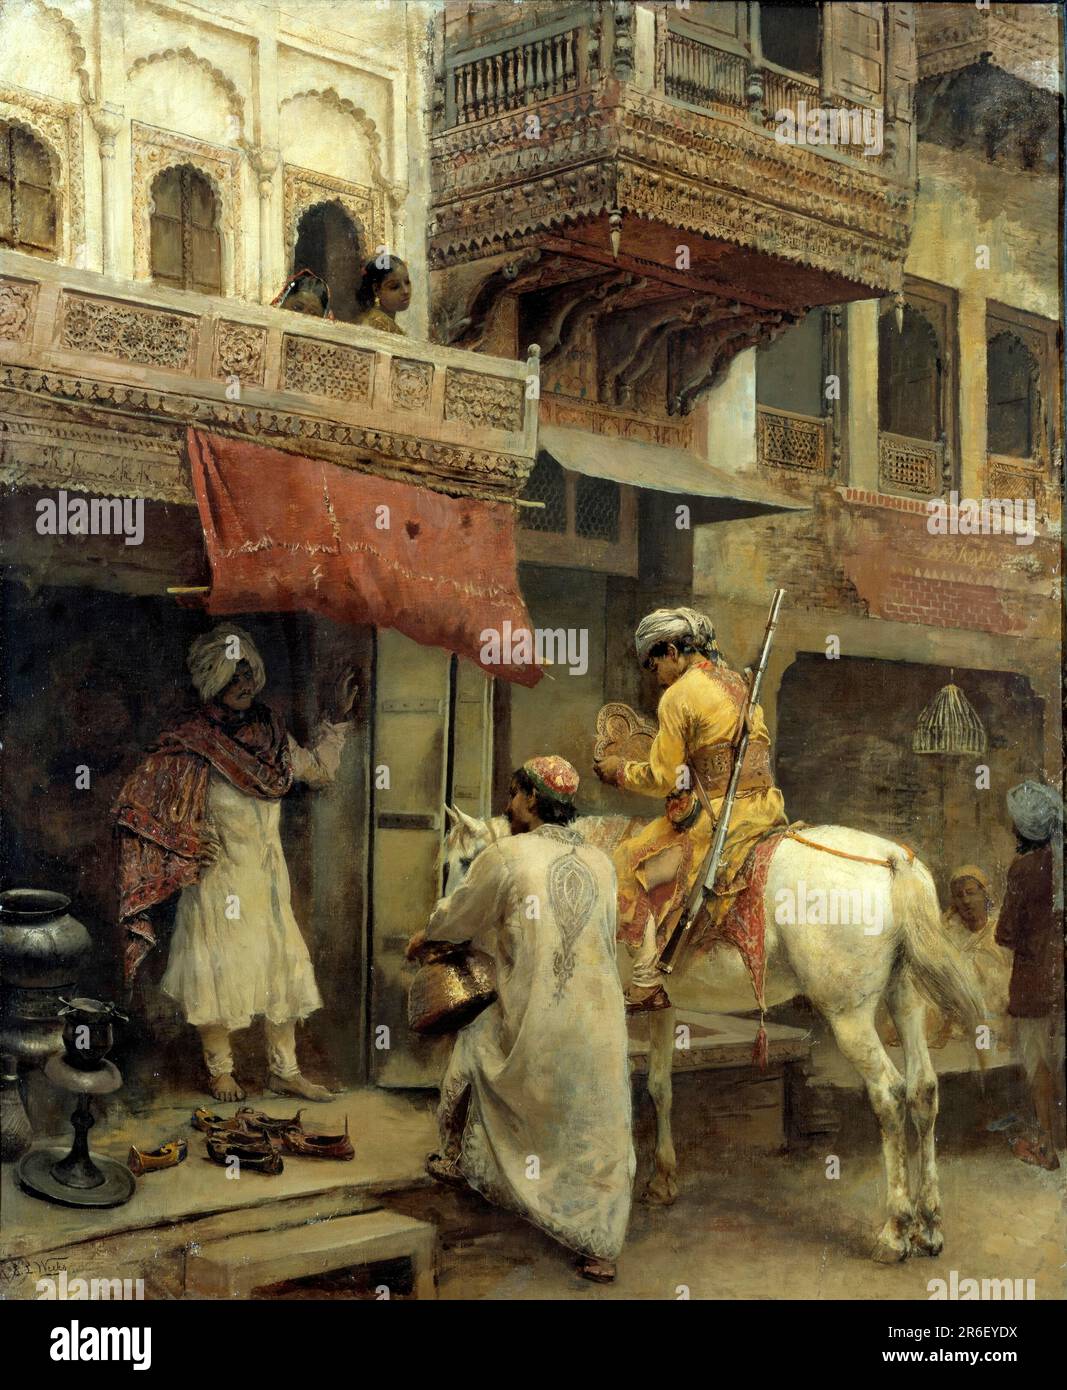 Scène de rue en Inde. huile sur toile. Date : env. 1885. Musée: Smithsonian American Art Museum. Banque D'Images